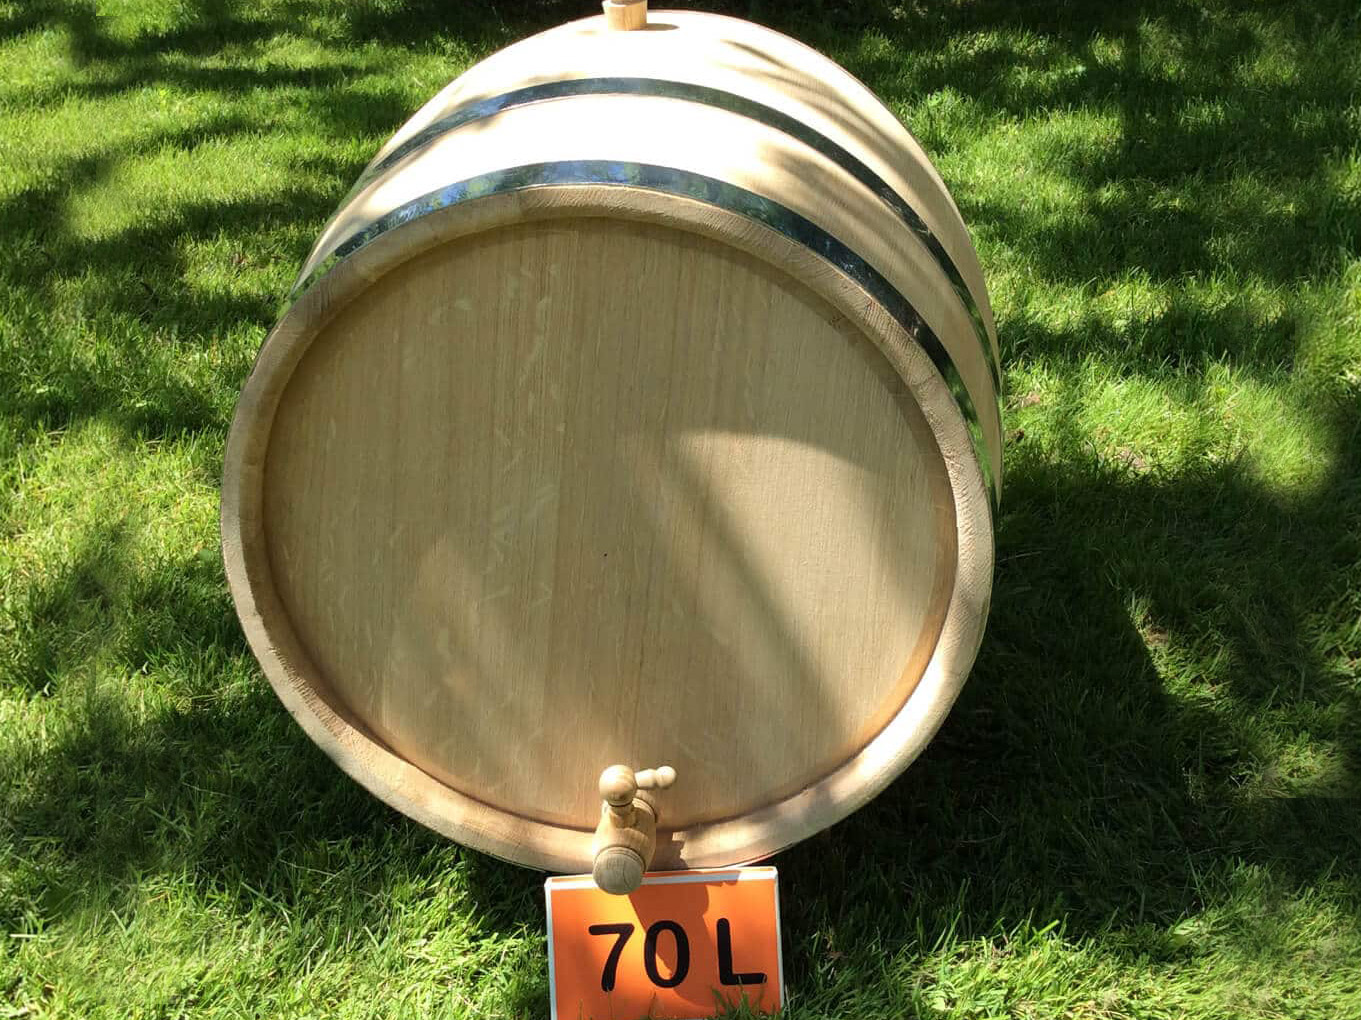 Oak barrel 70L